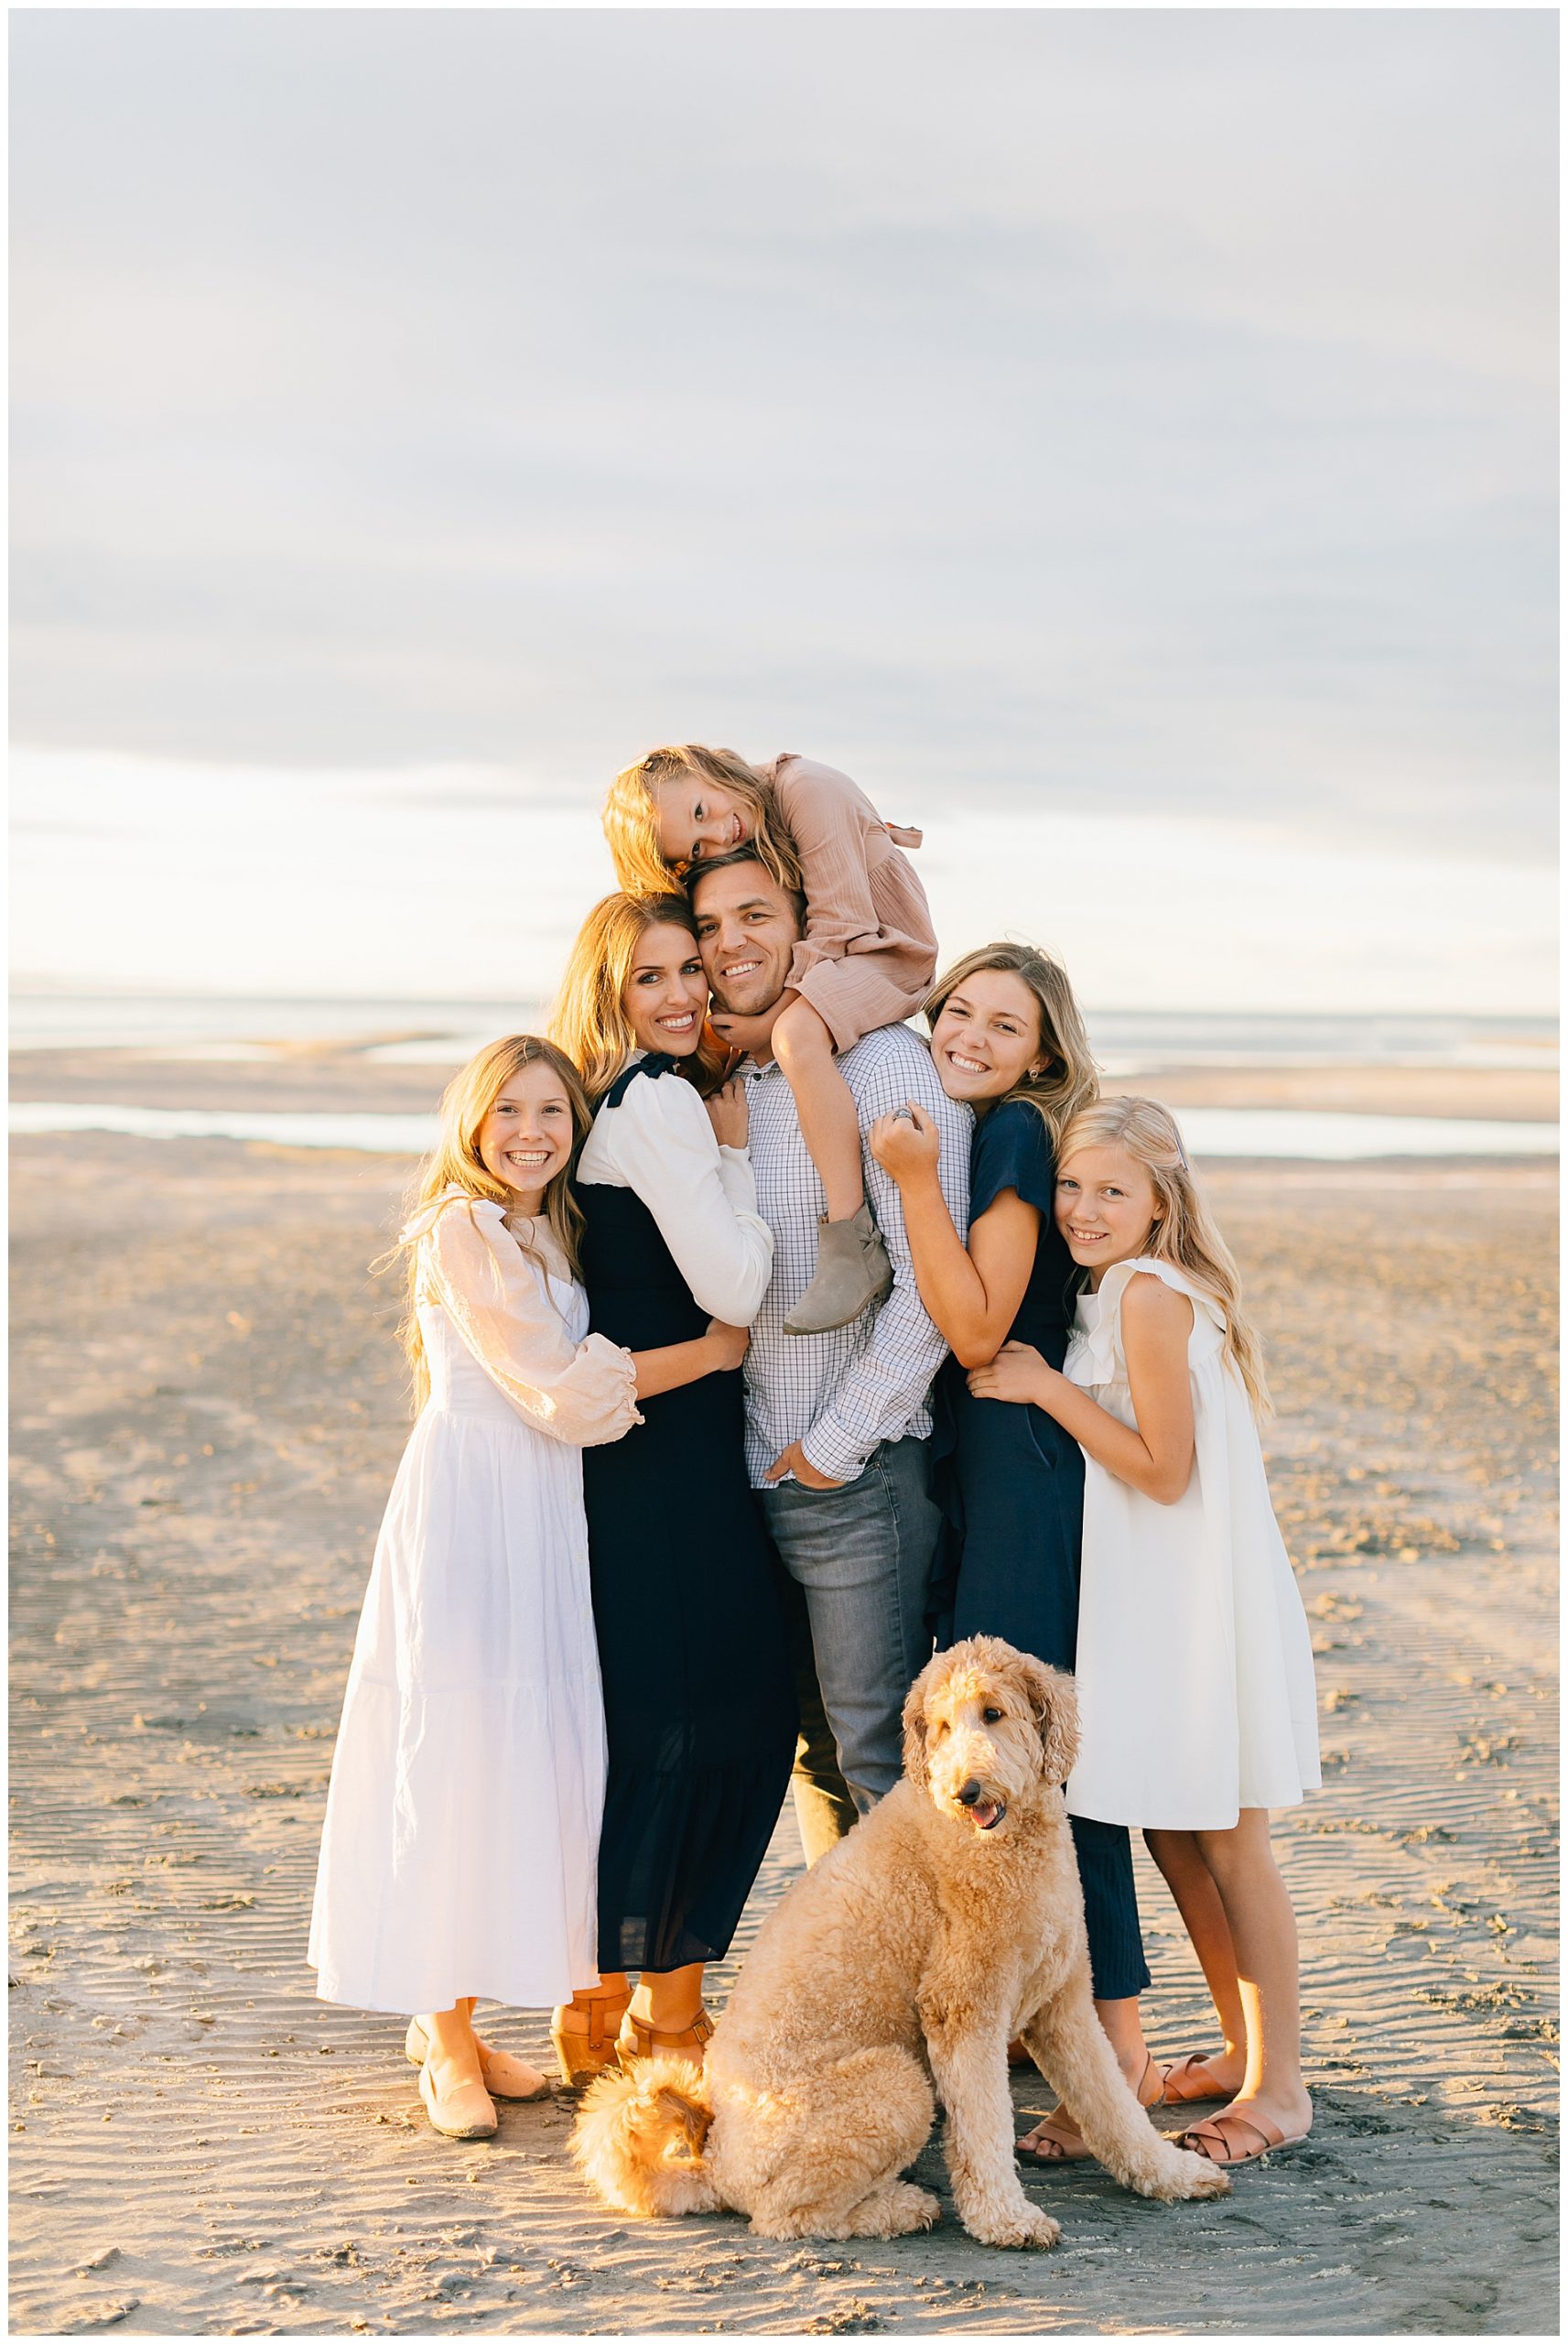 Best Utah Family Photographer | The Green Family